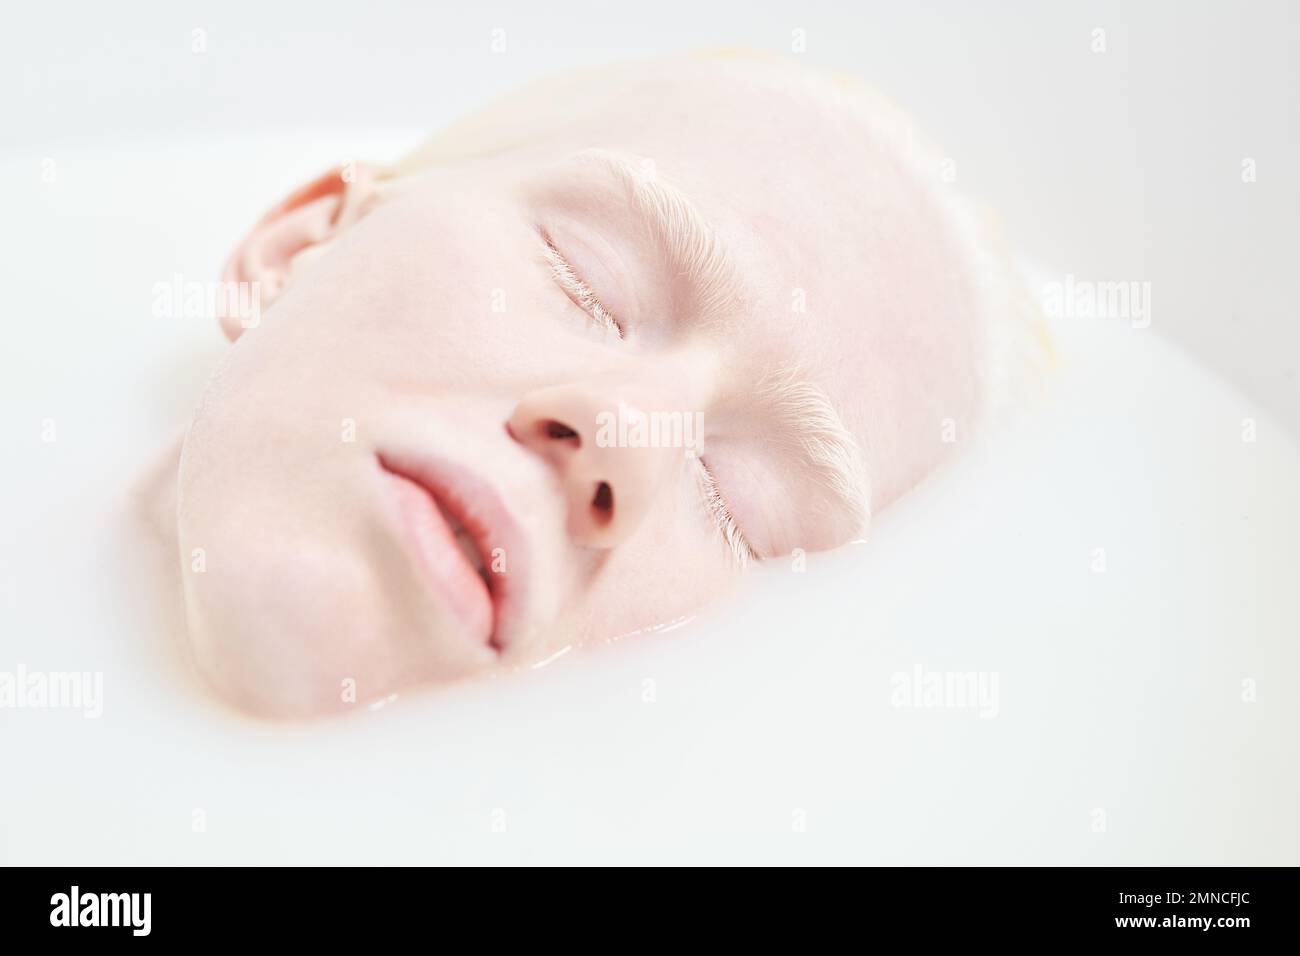 Primer plano de cara pálida de mujer albina joven pacífica o durmiente acostada en la bañera llena de agua tibia y leche durante el procedimiento de belleza Foto de stock